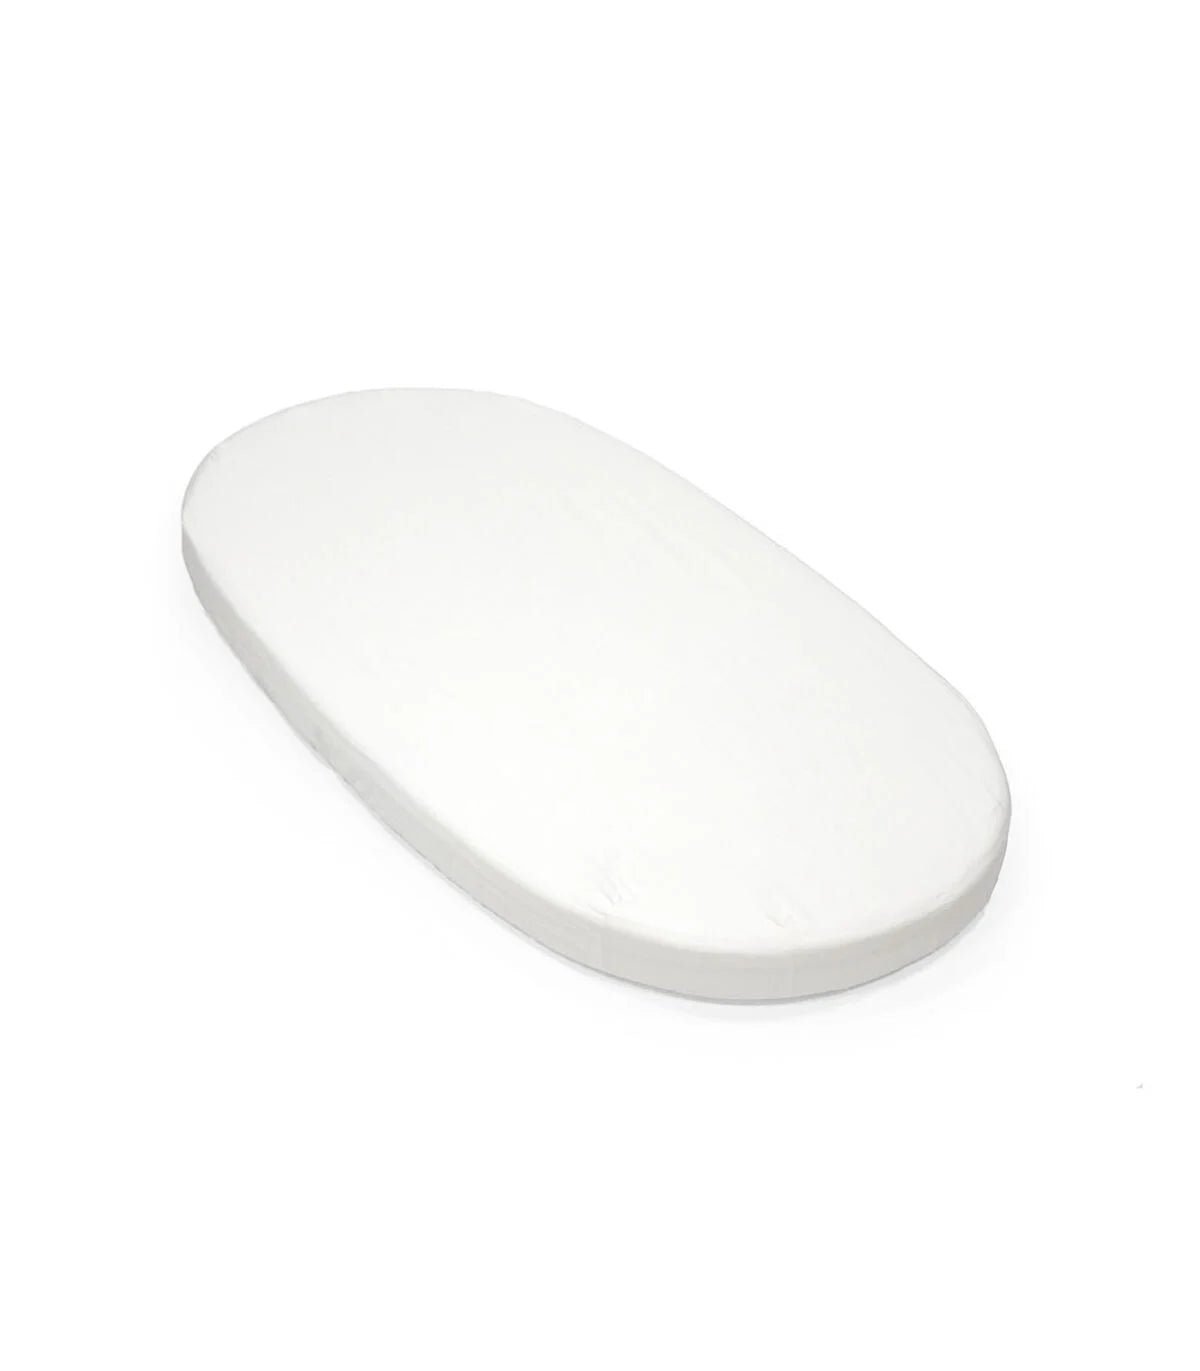 Stokke® Sleepi™ Bed Fitted Sheet V3 White NEW